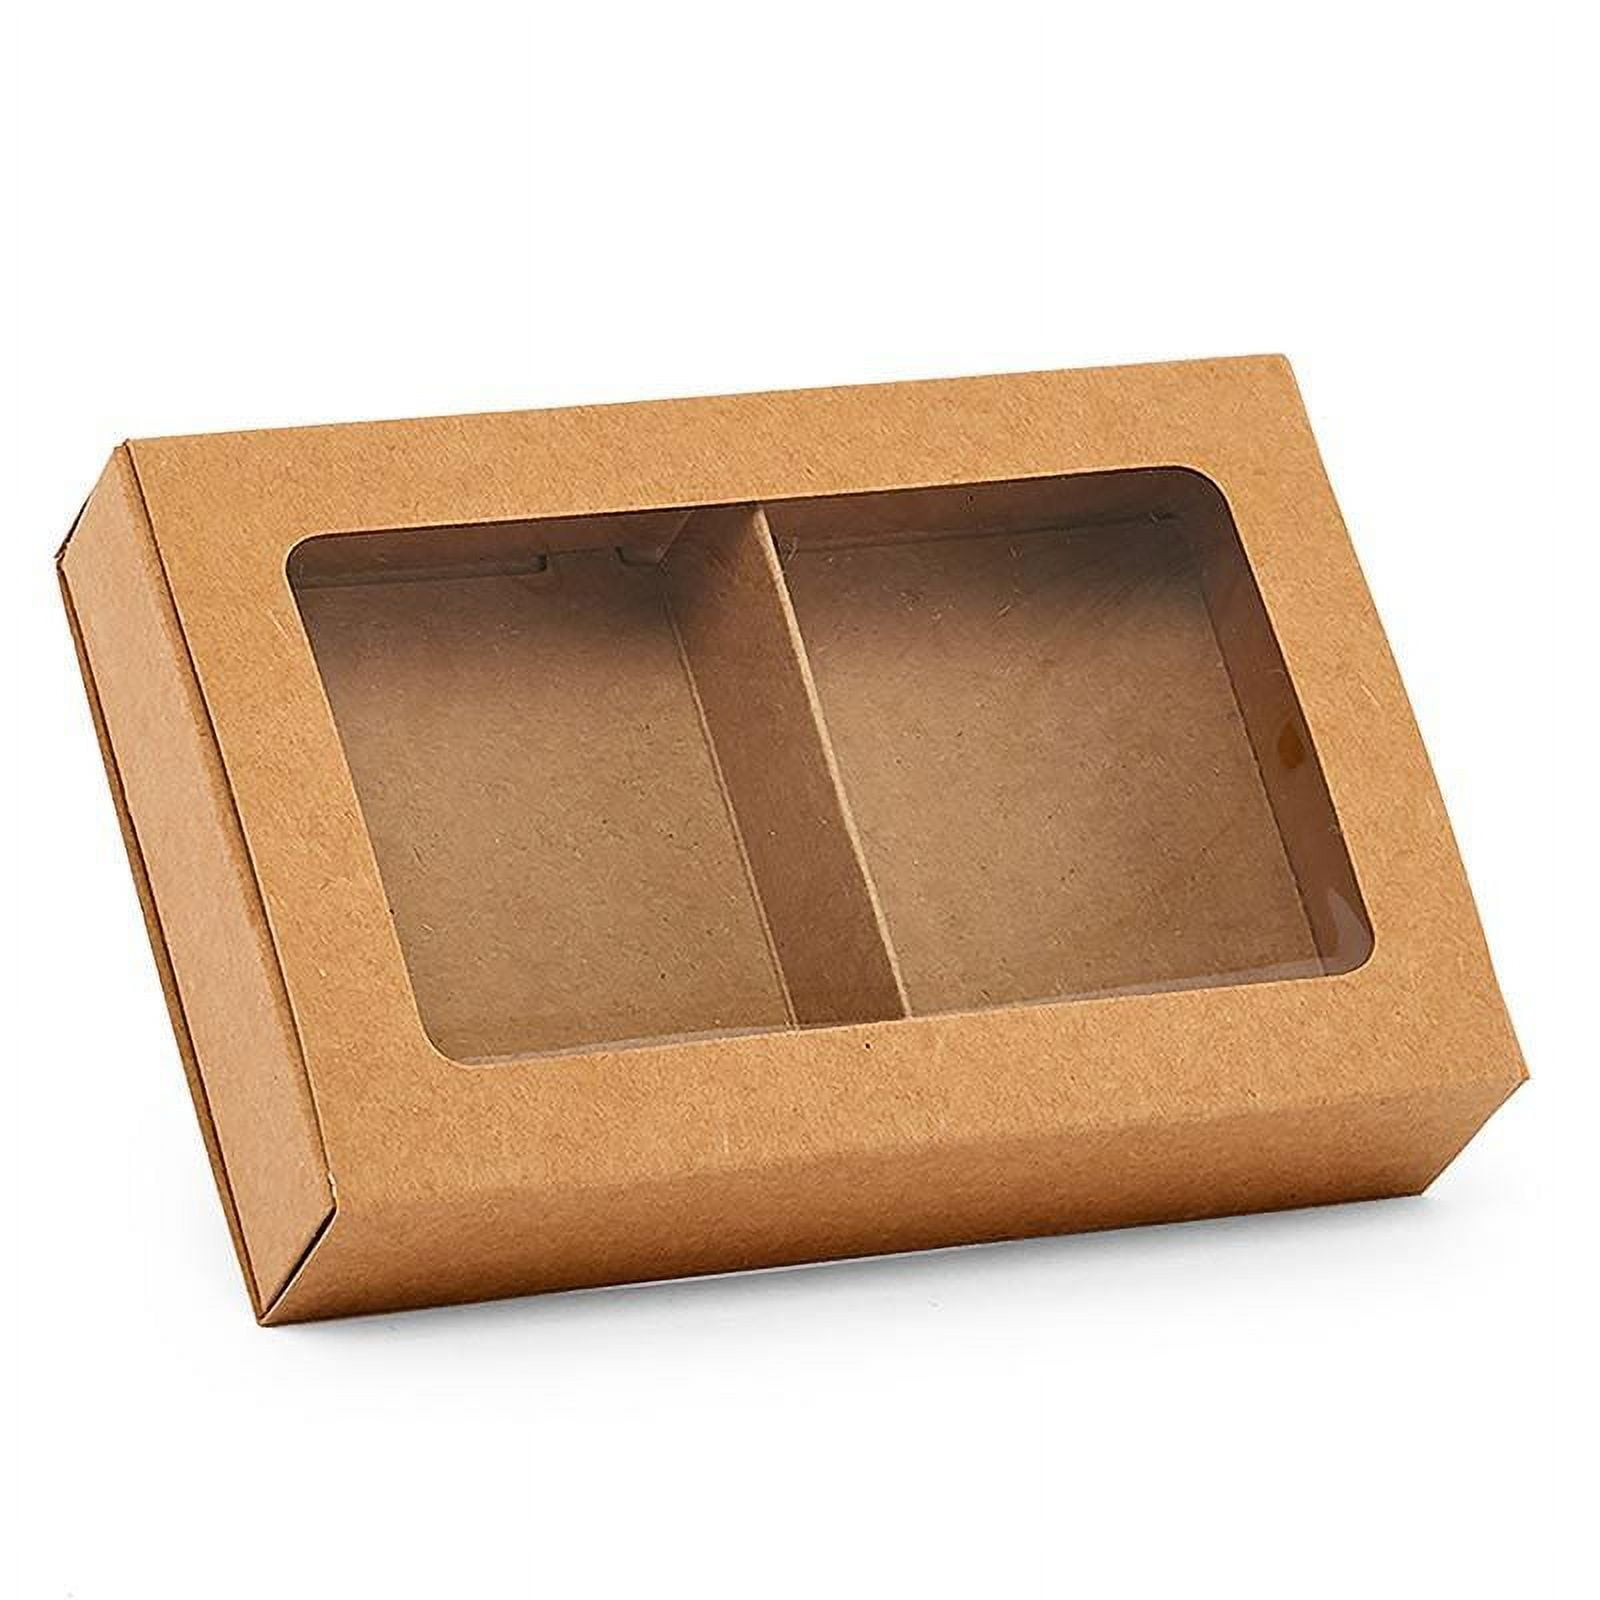 1 Sample Box Kraft Natural Gift Box 2-1/2 X 1-3/4 X 4 Soap Boxes